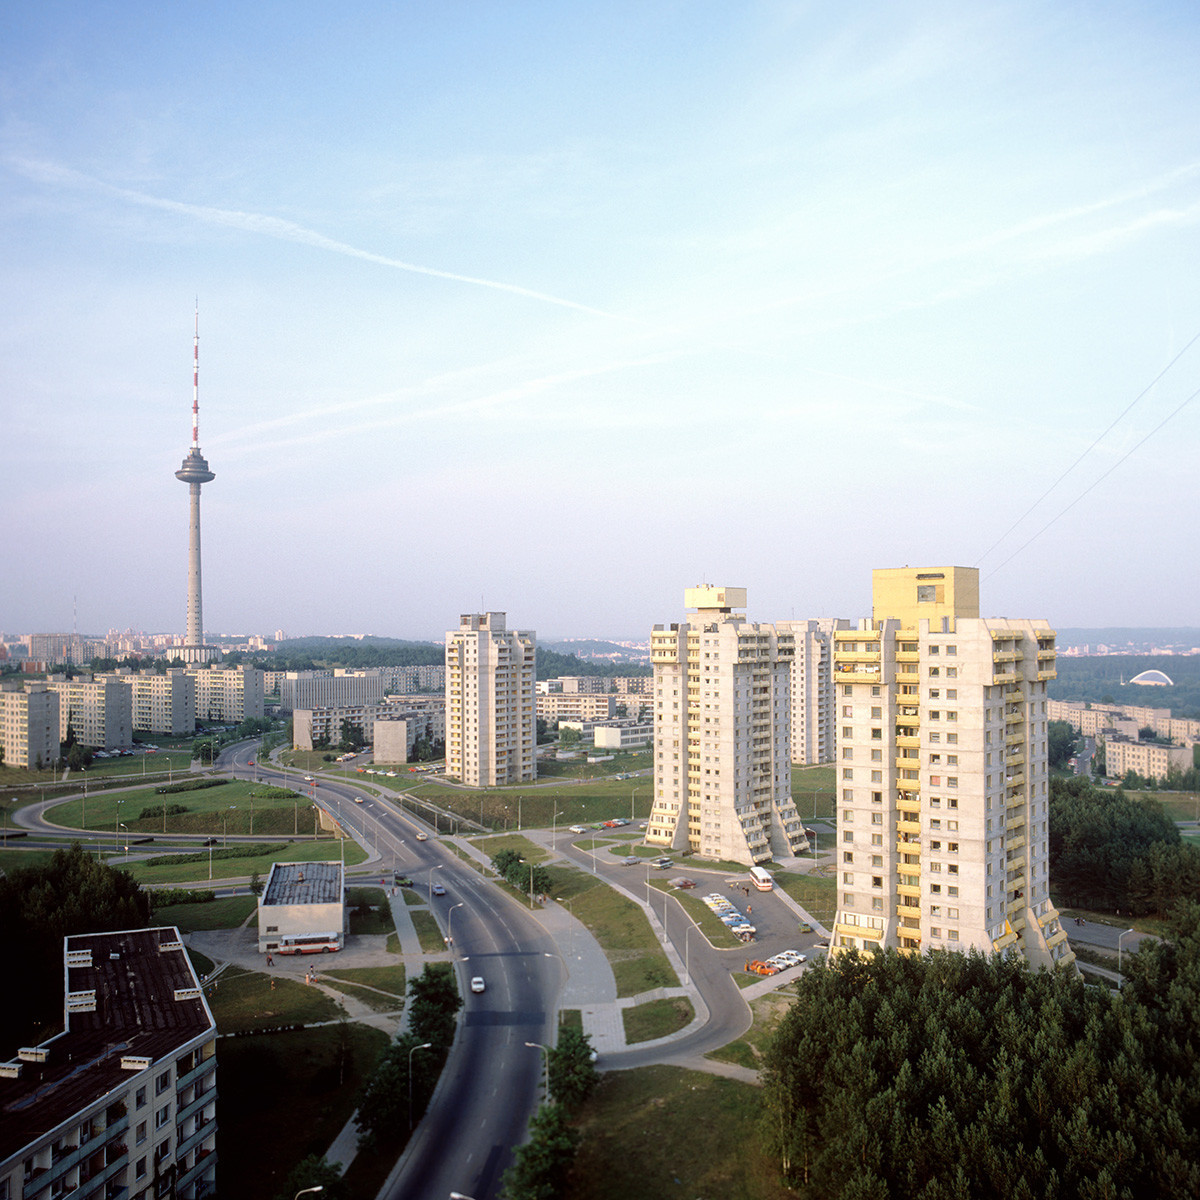 Населбата Лаздинај во Вилнус, 1985 година Литванска ССР.